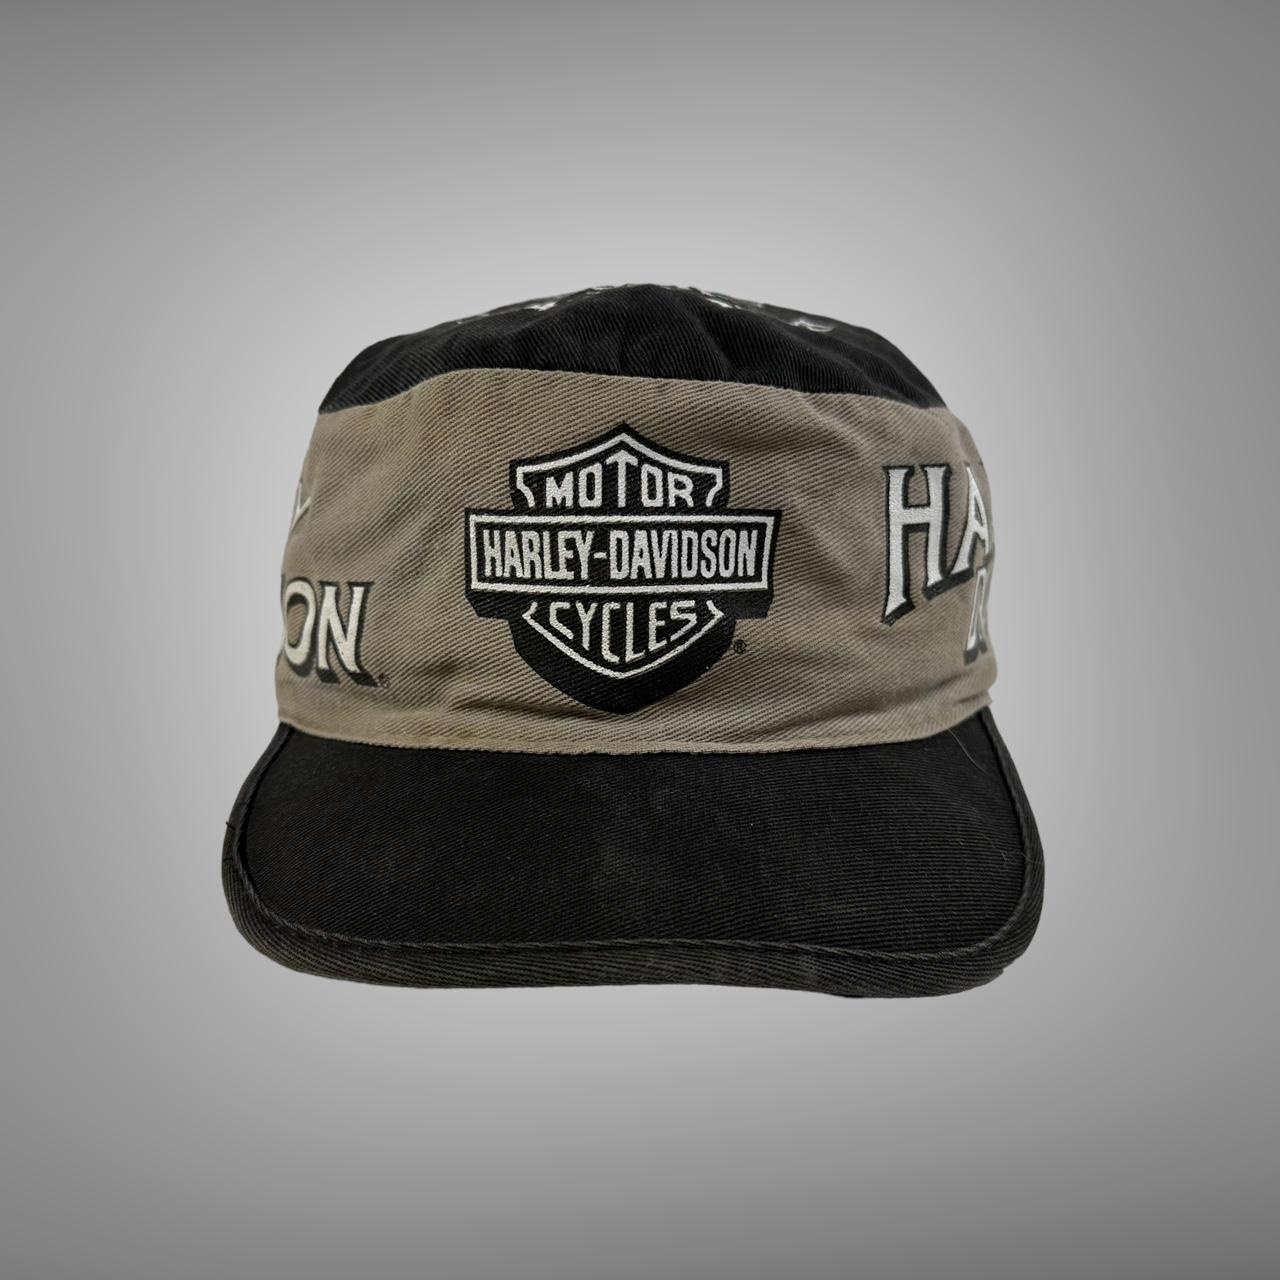 Harley Davidson Men's Black and Grey Hat